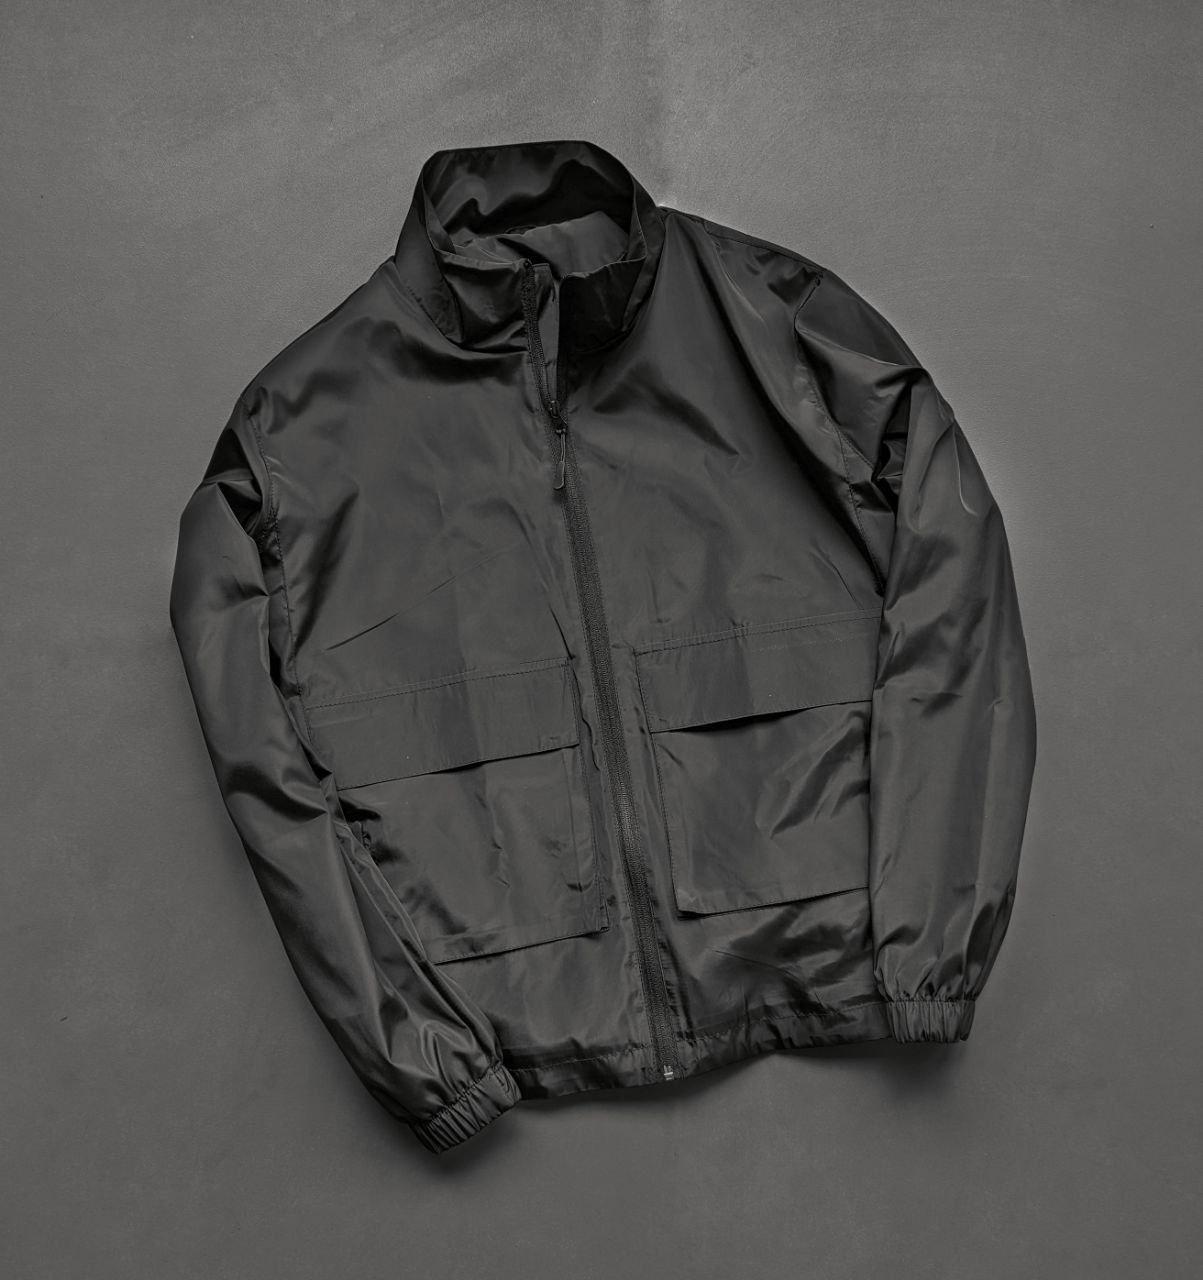 Чоловіча куртка вітровка демісезонна без капішона Reload Pocket чорна / Легка классична куртка весна-осінь